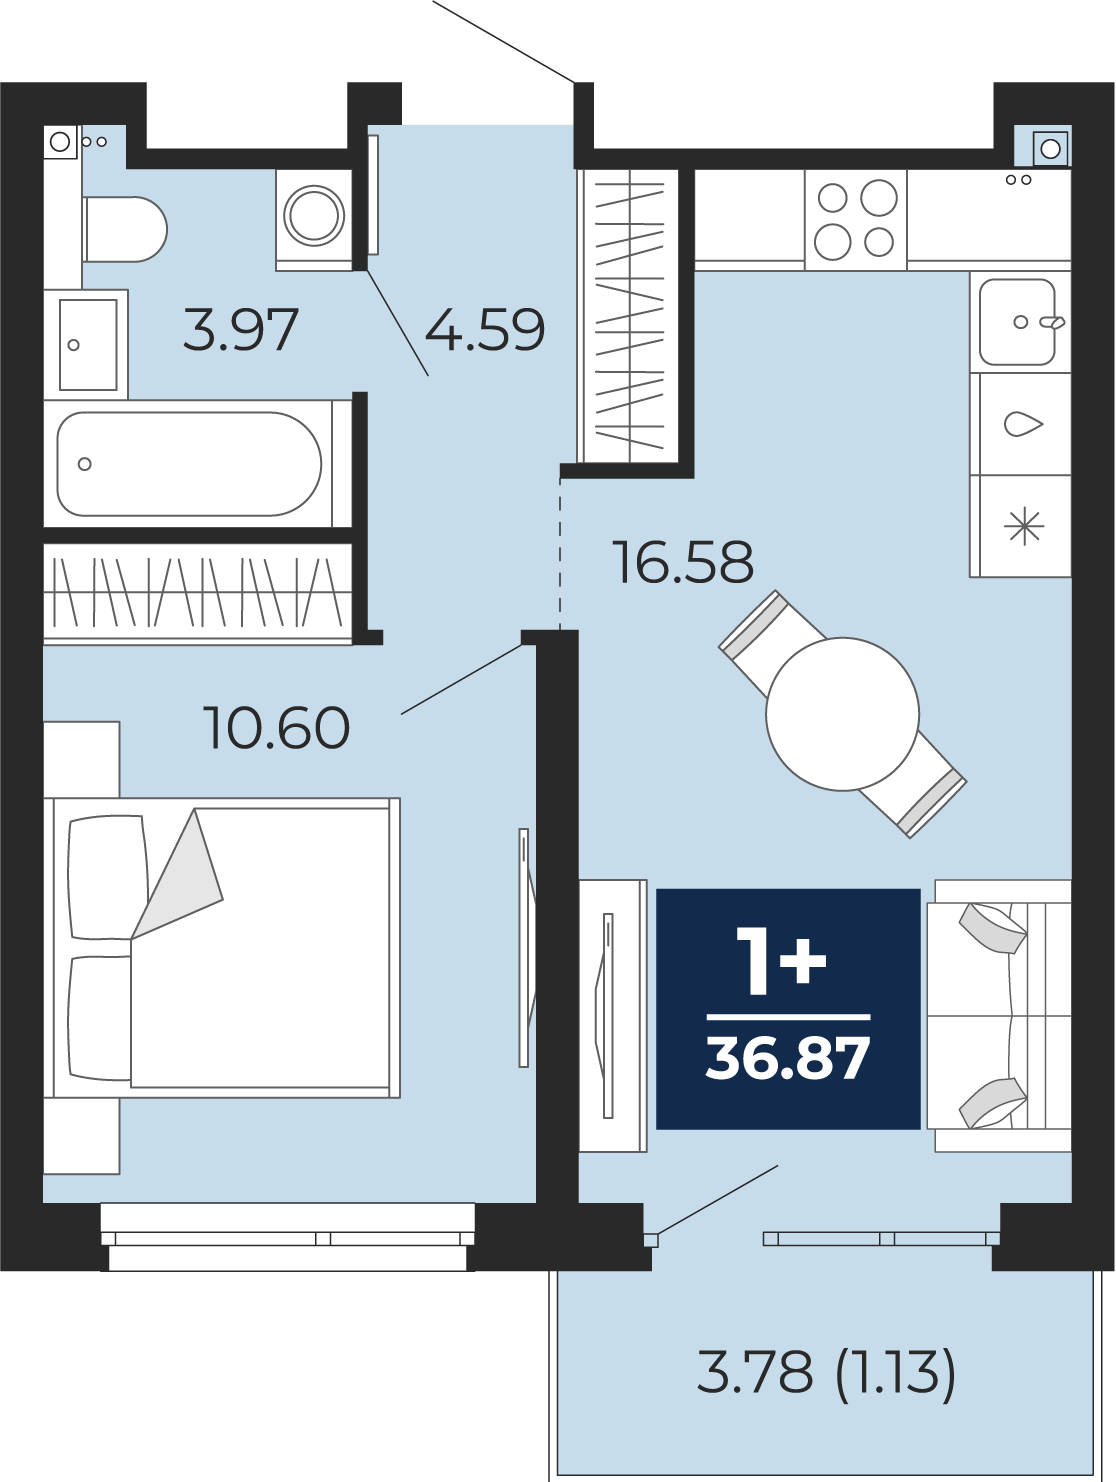 Квартира № 316, 1-комнатная, 36.87 кв. м, 21 этаж